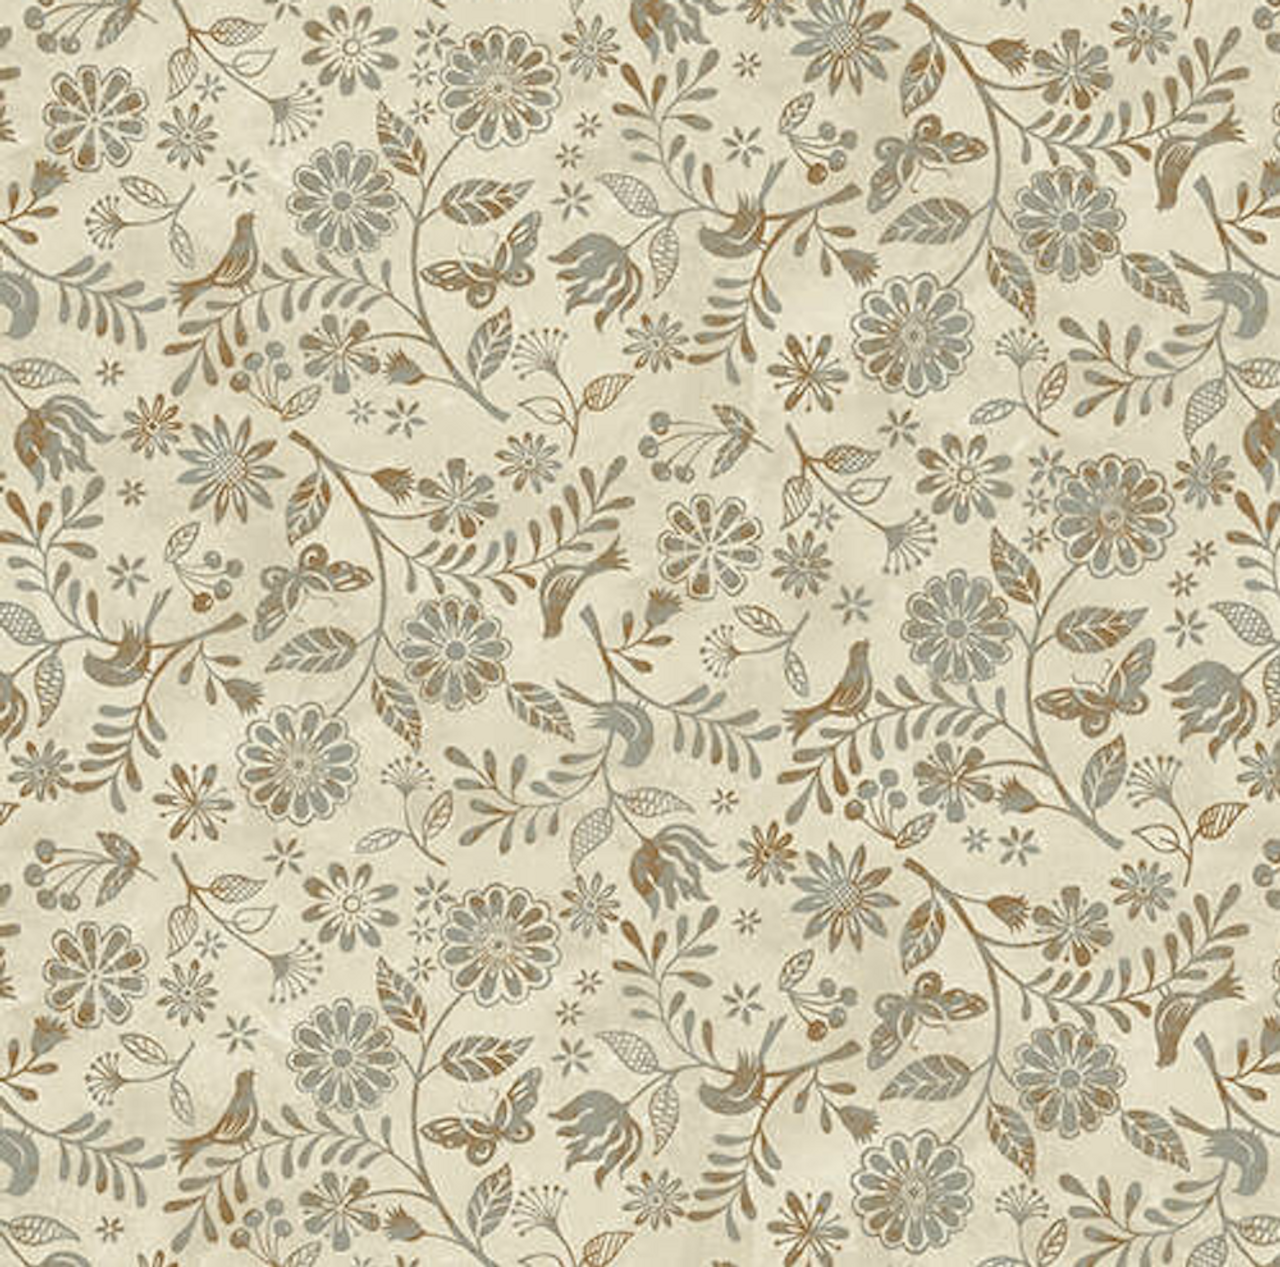 Studio E Le Poulet 5460-33 Sm Wildflower Allover Cream Cotton Fabric By Yard